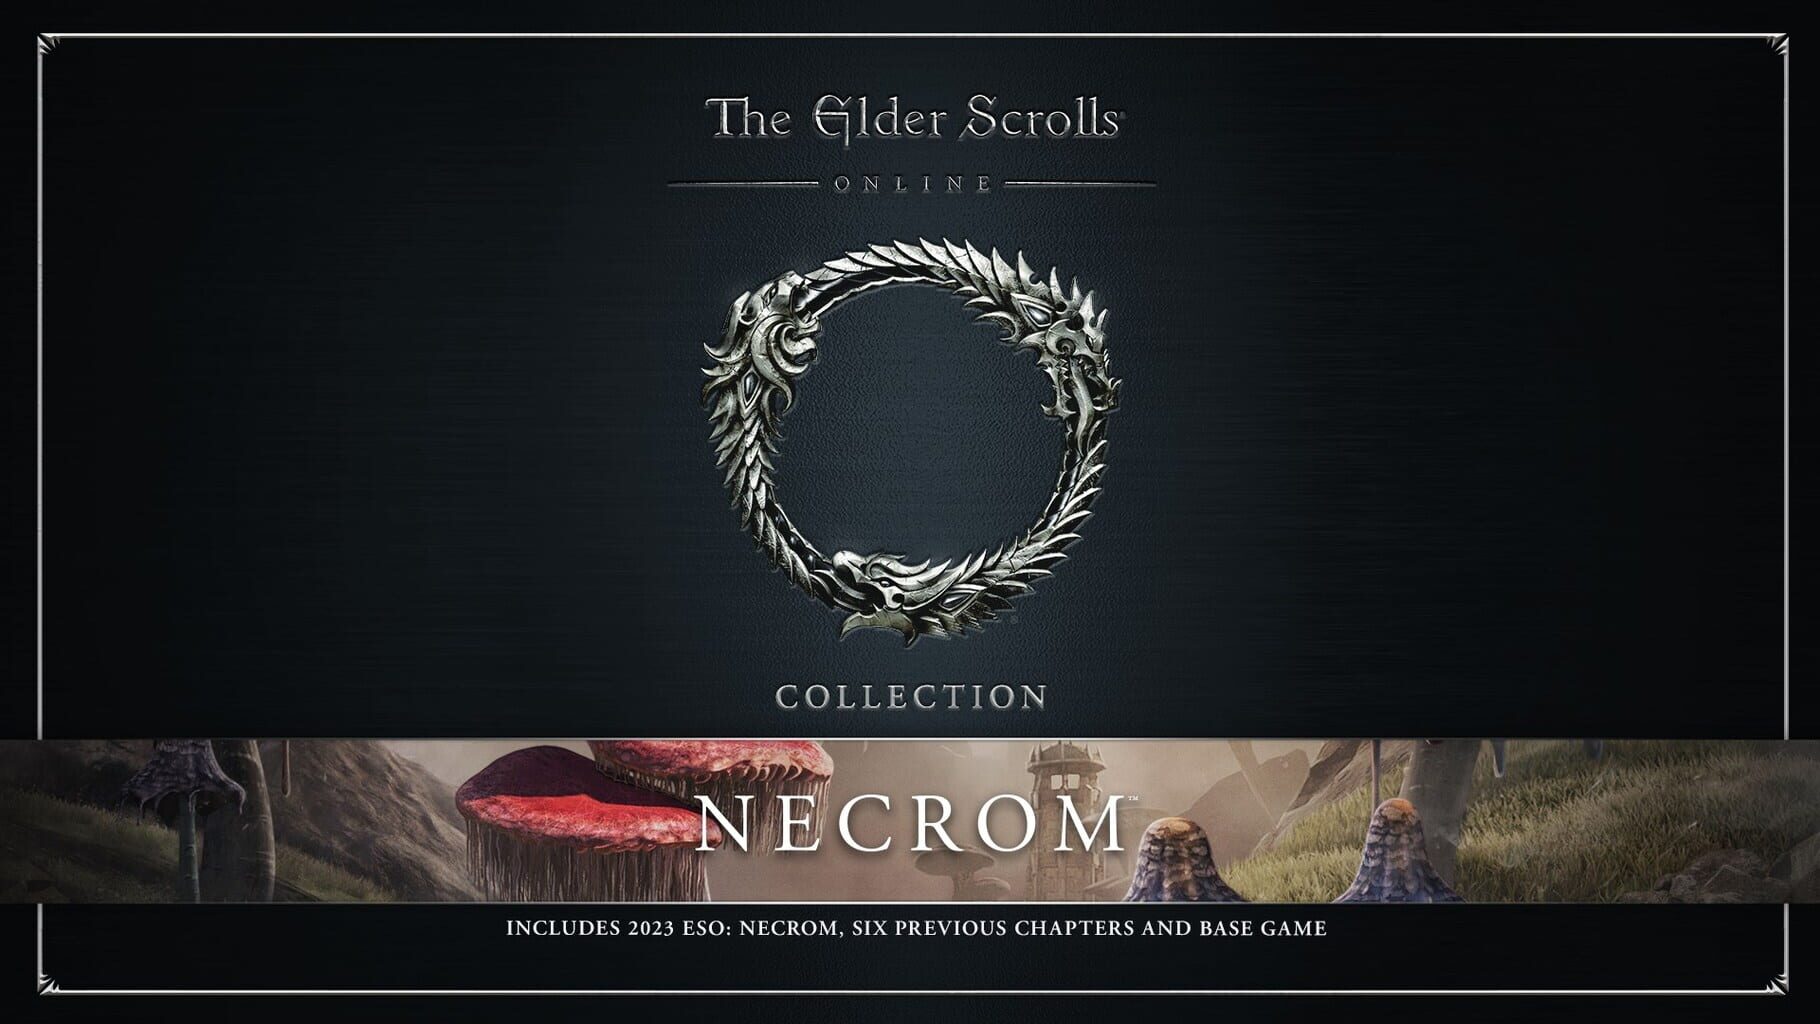 Arte - The Elder Scrolls Online Collection: Necrom